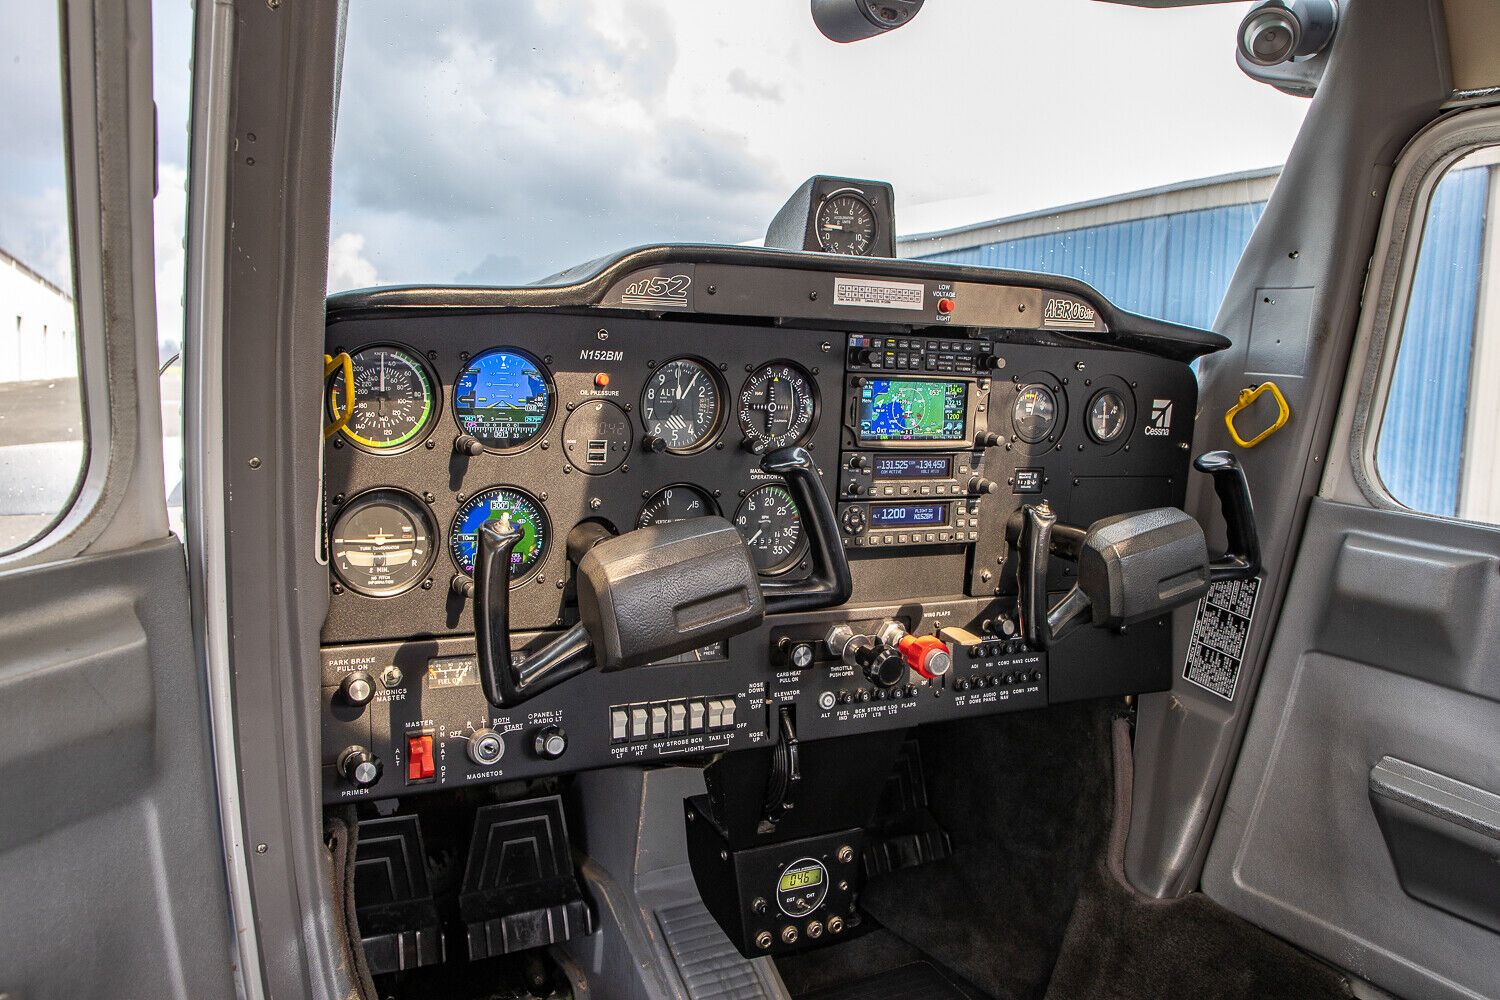 Cessna 150/152 Instrument Panels - CNC Cut - Built to Order - Bare Aluminum